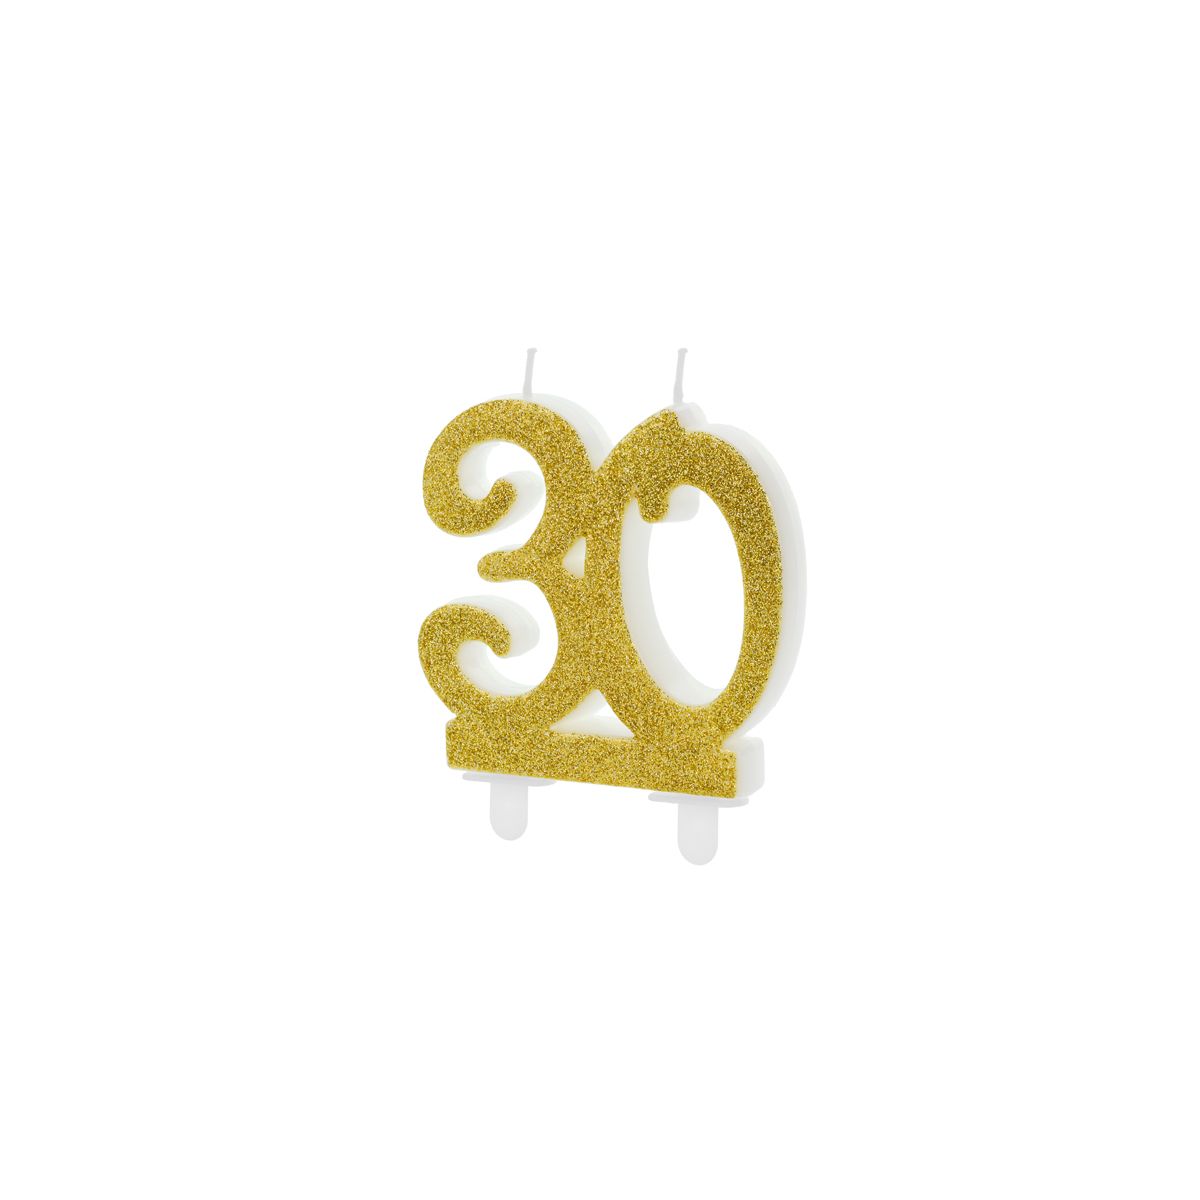 Świeczka urodzinowa liczba 30, złoty 7.5cm Partydeco (SCU5-30-019)